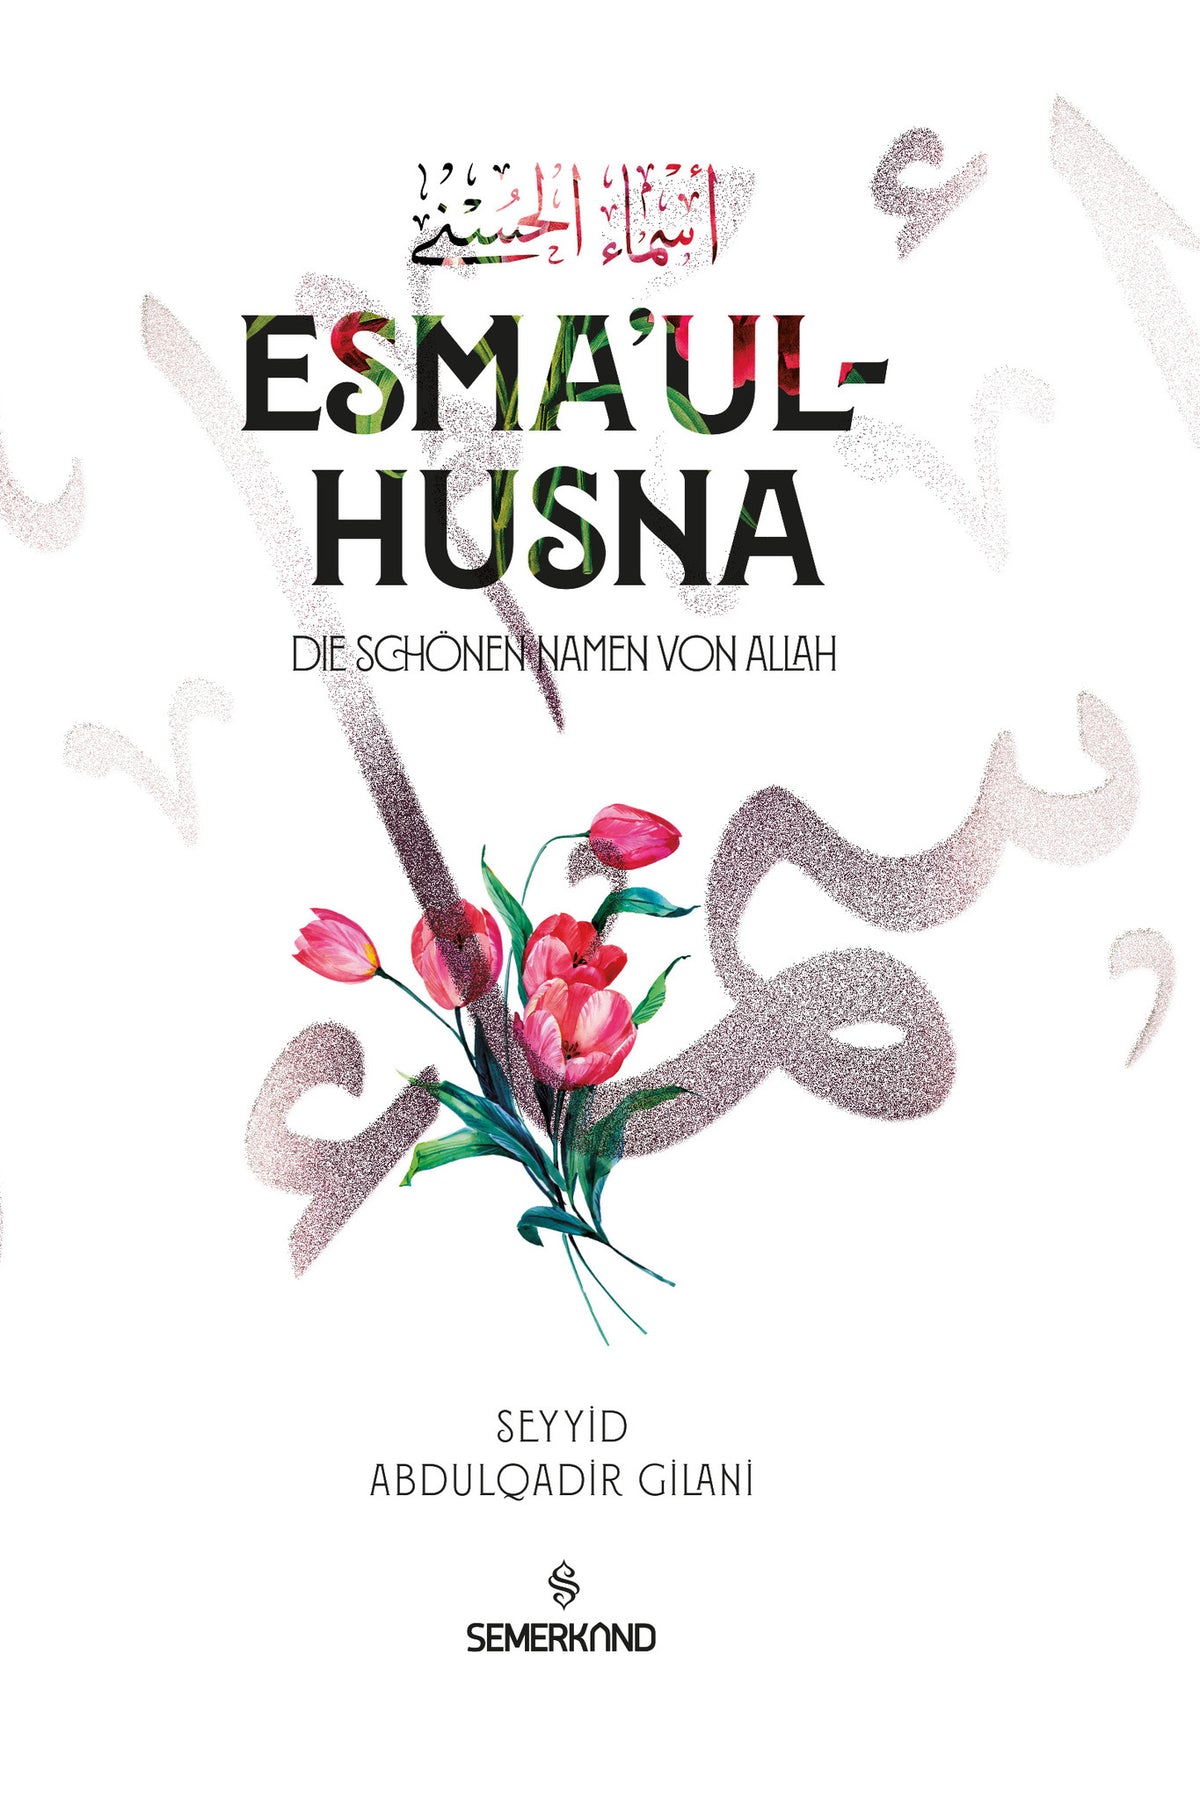 Esmaul Husna - Die schönen Namane von Allah